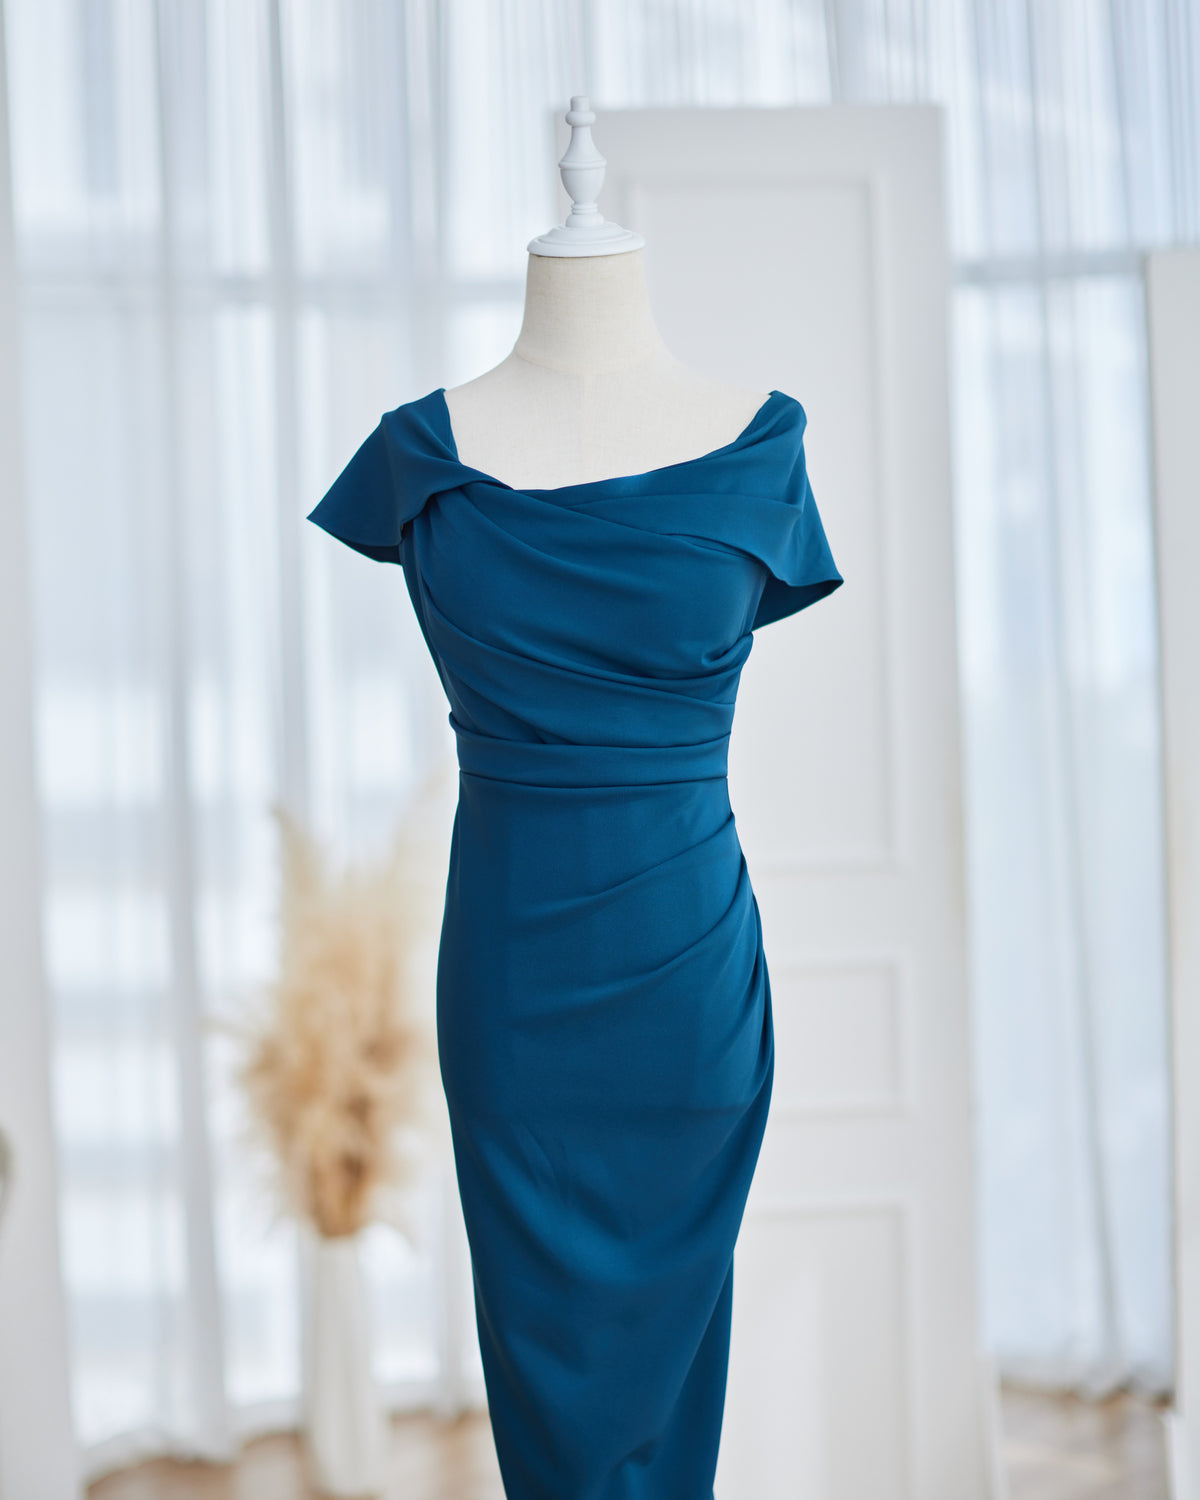 Ariadne Assymmetrical Dress